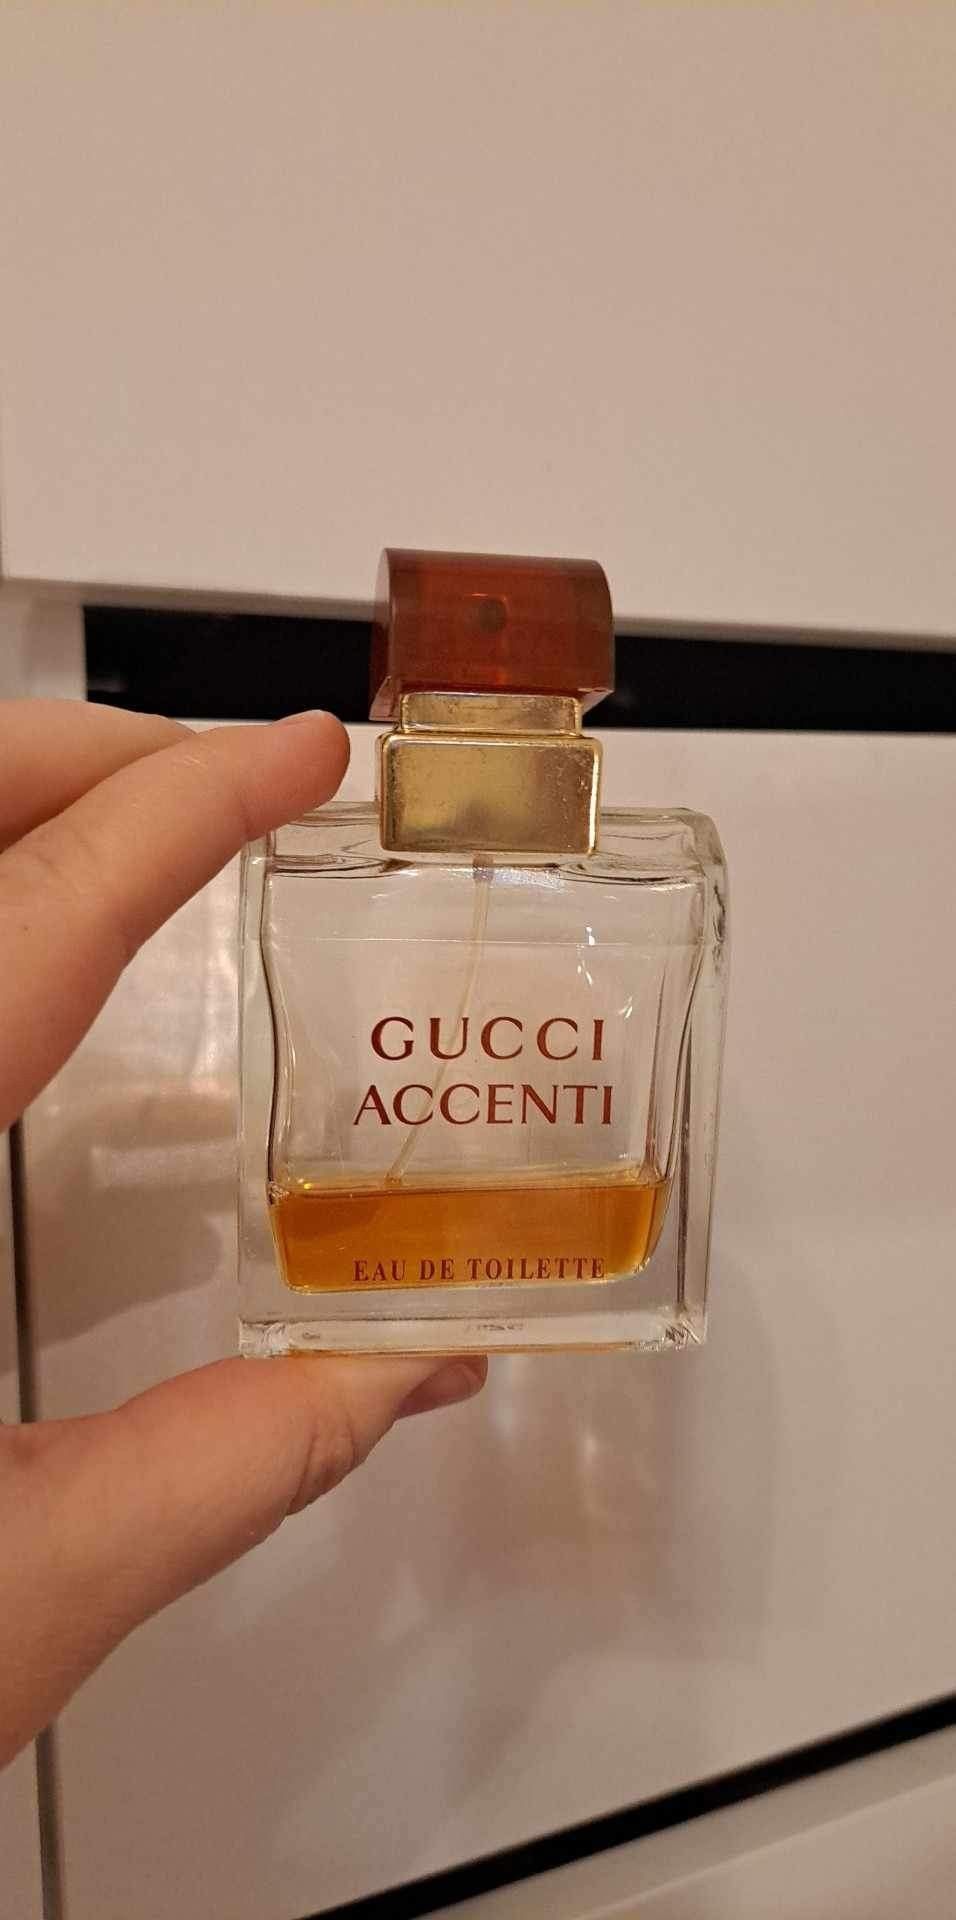 Gucci Accenti hajuvesi